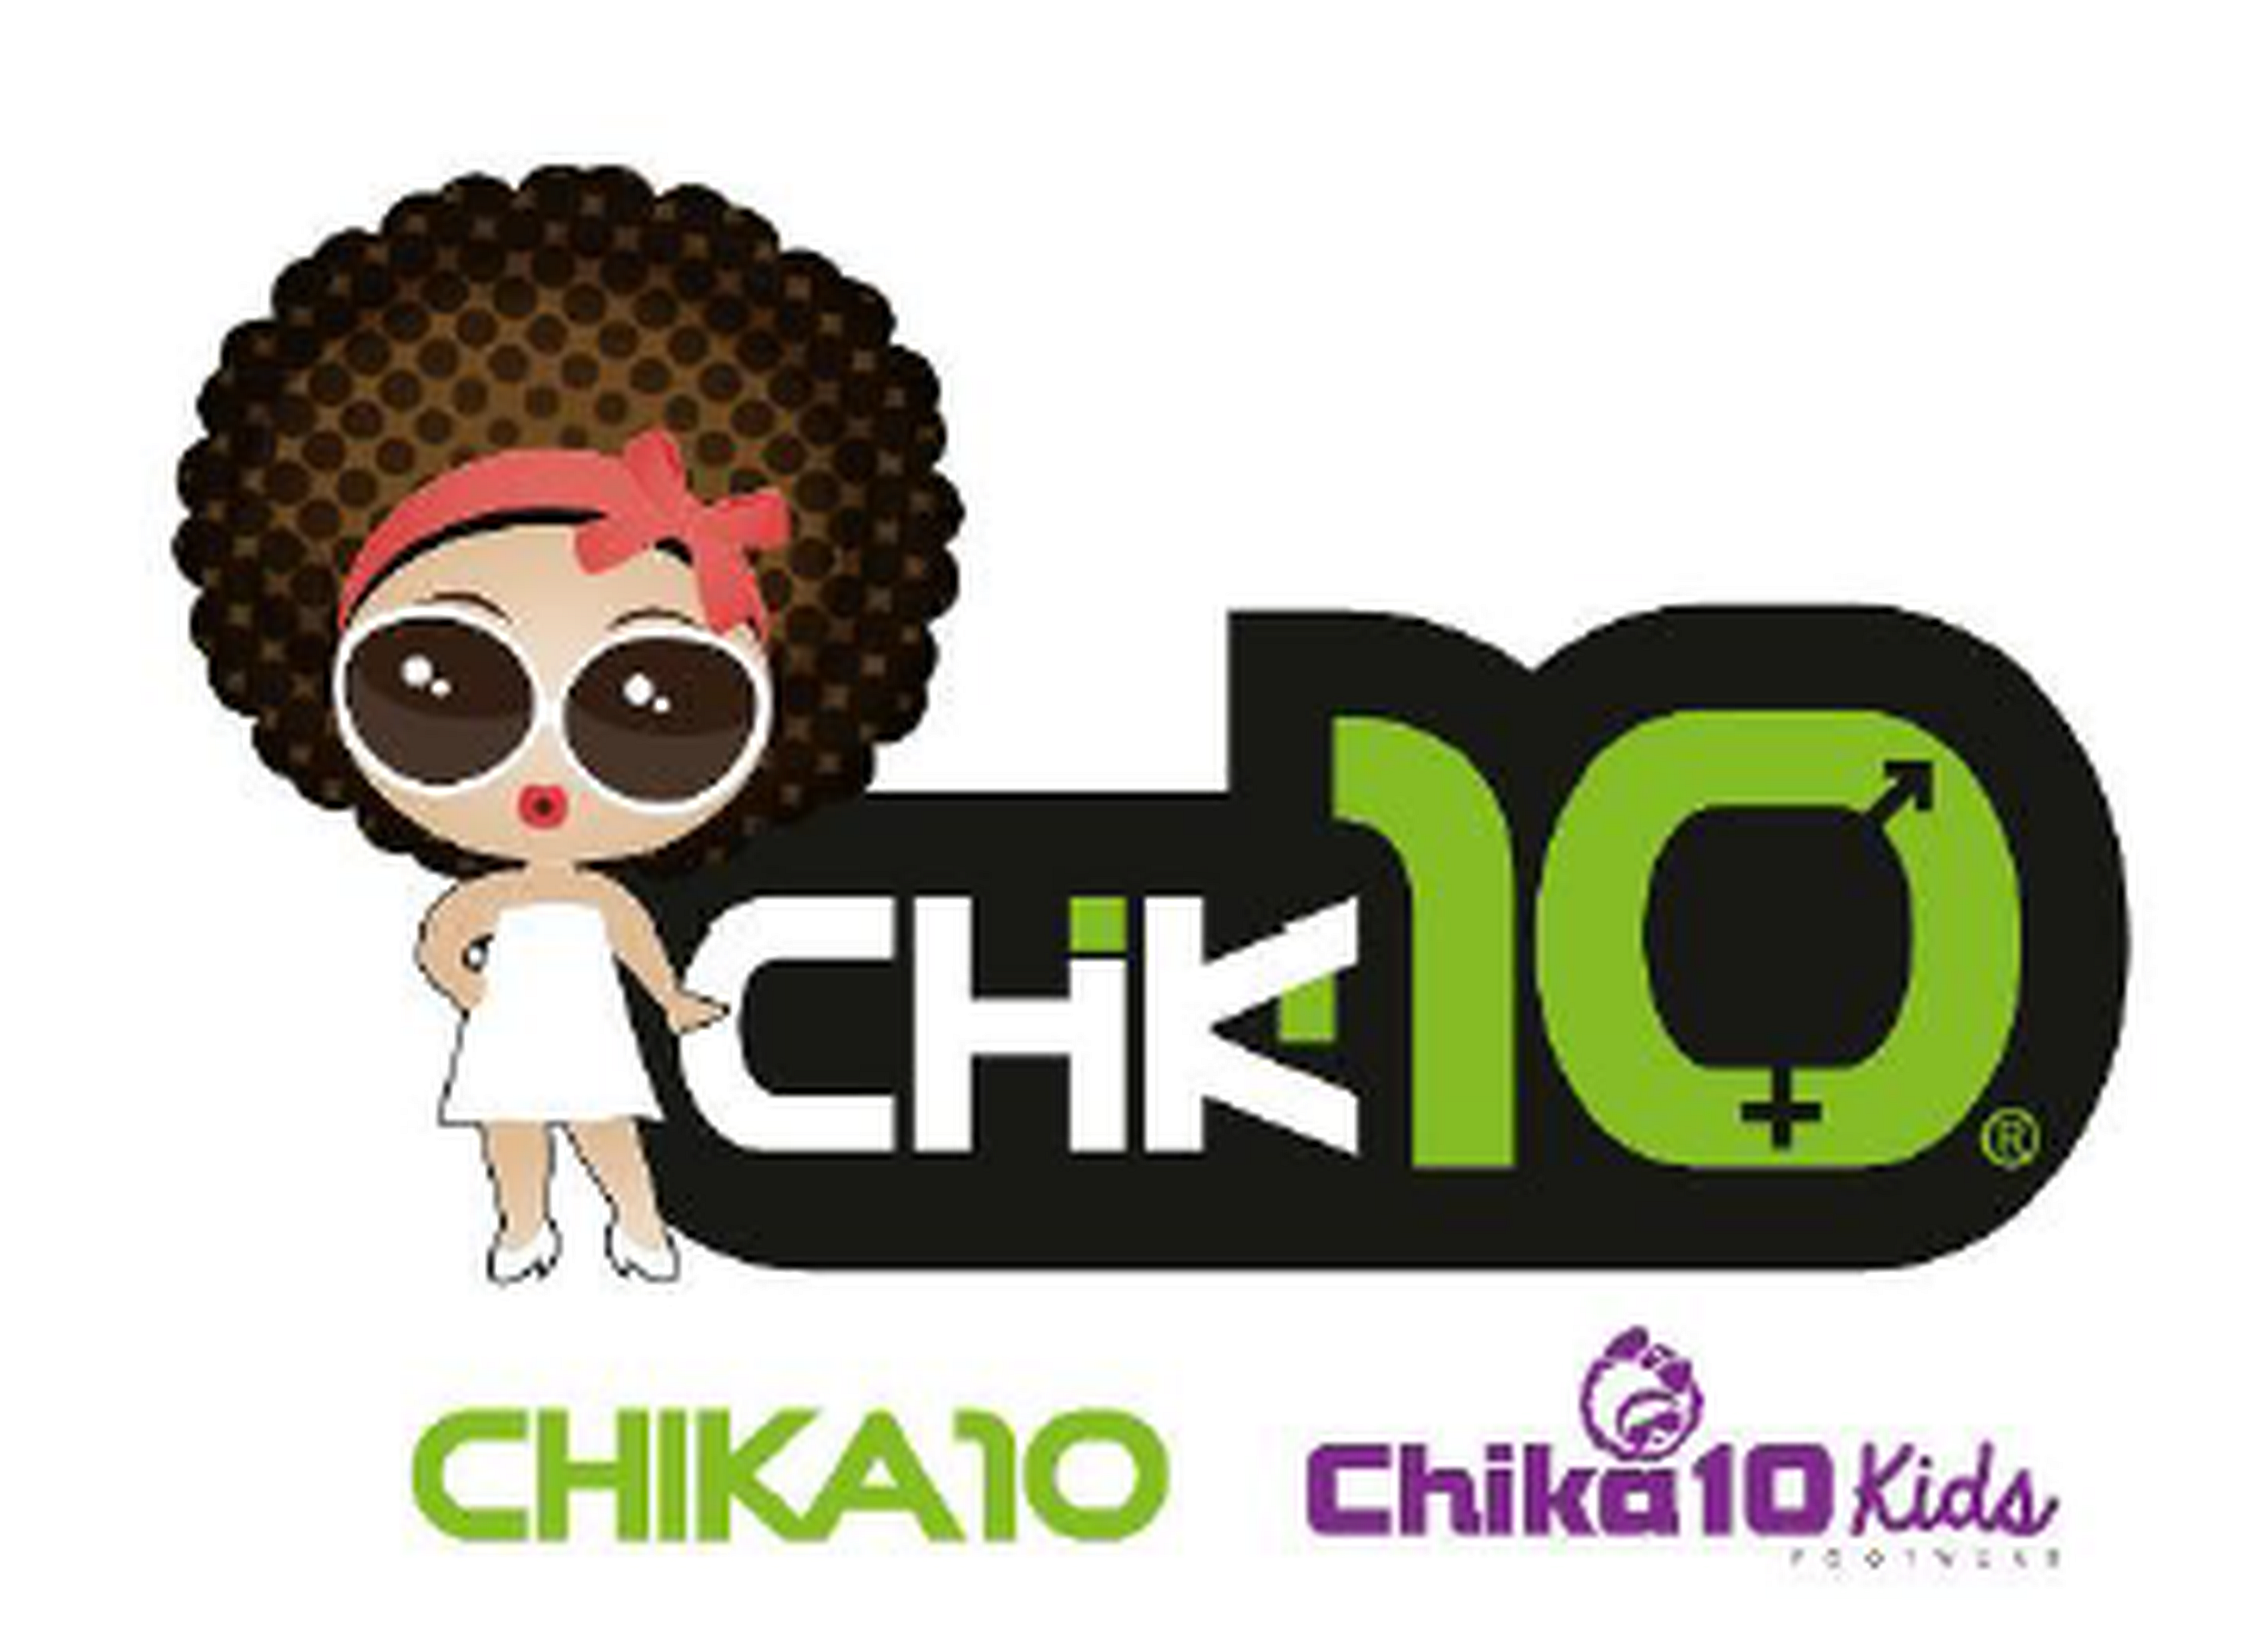 Chika10